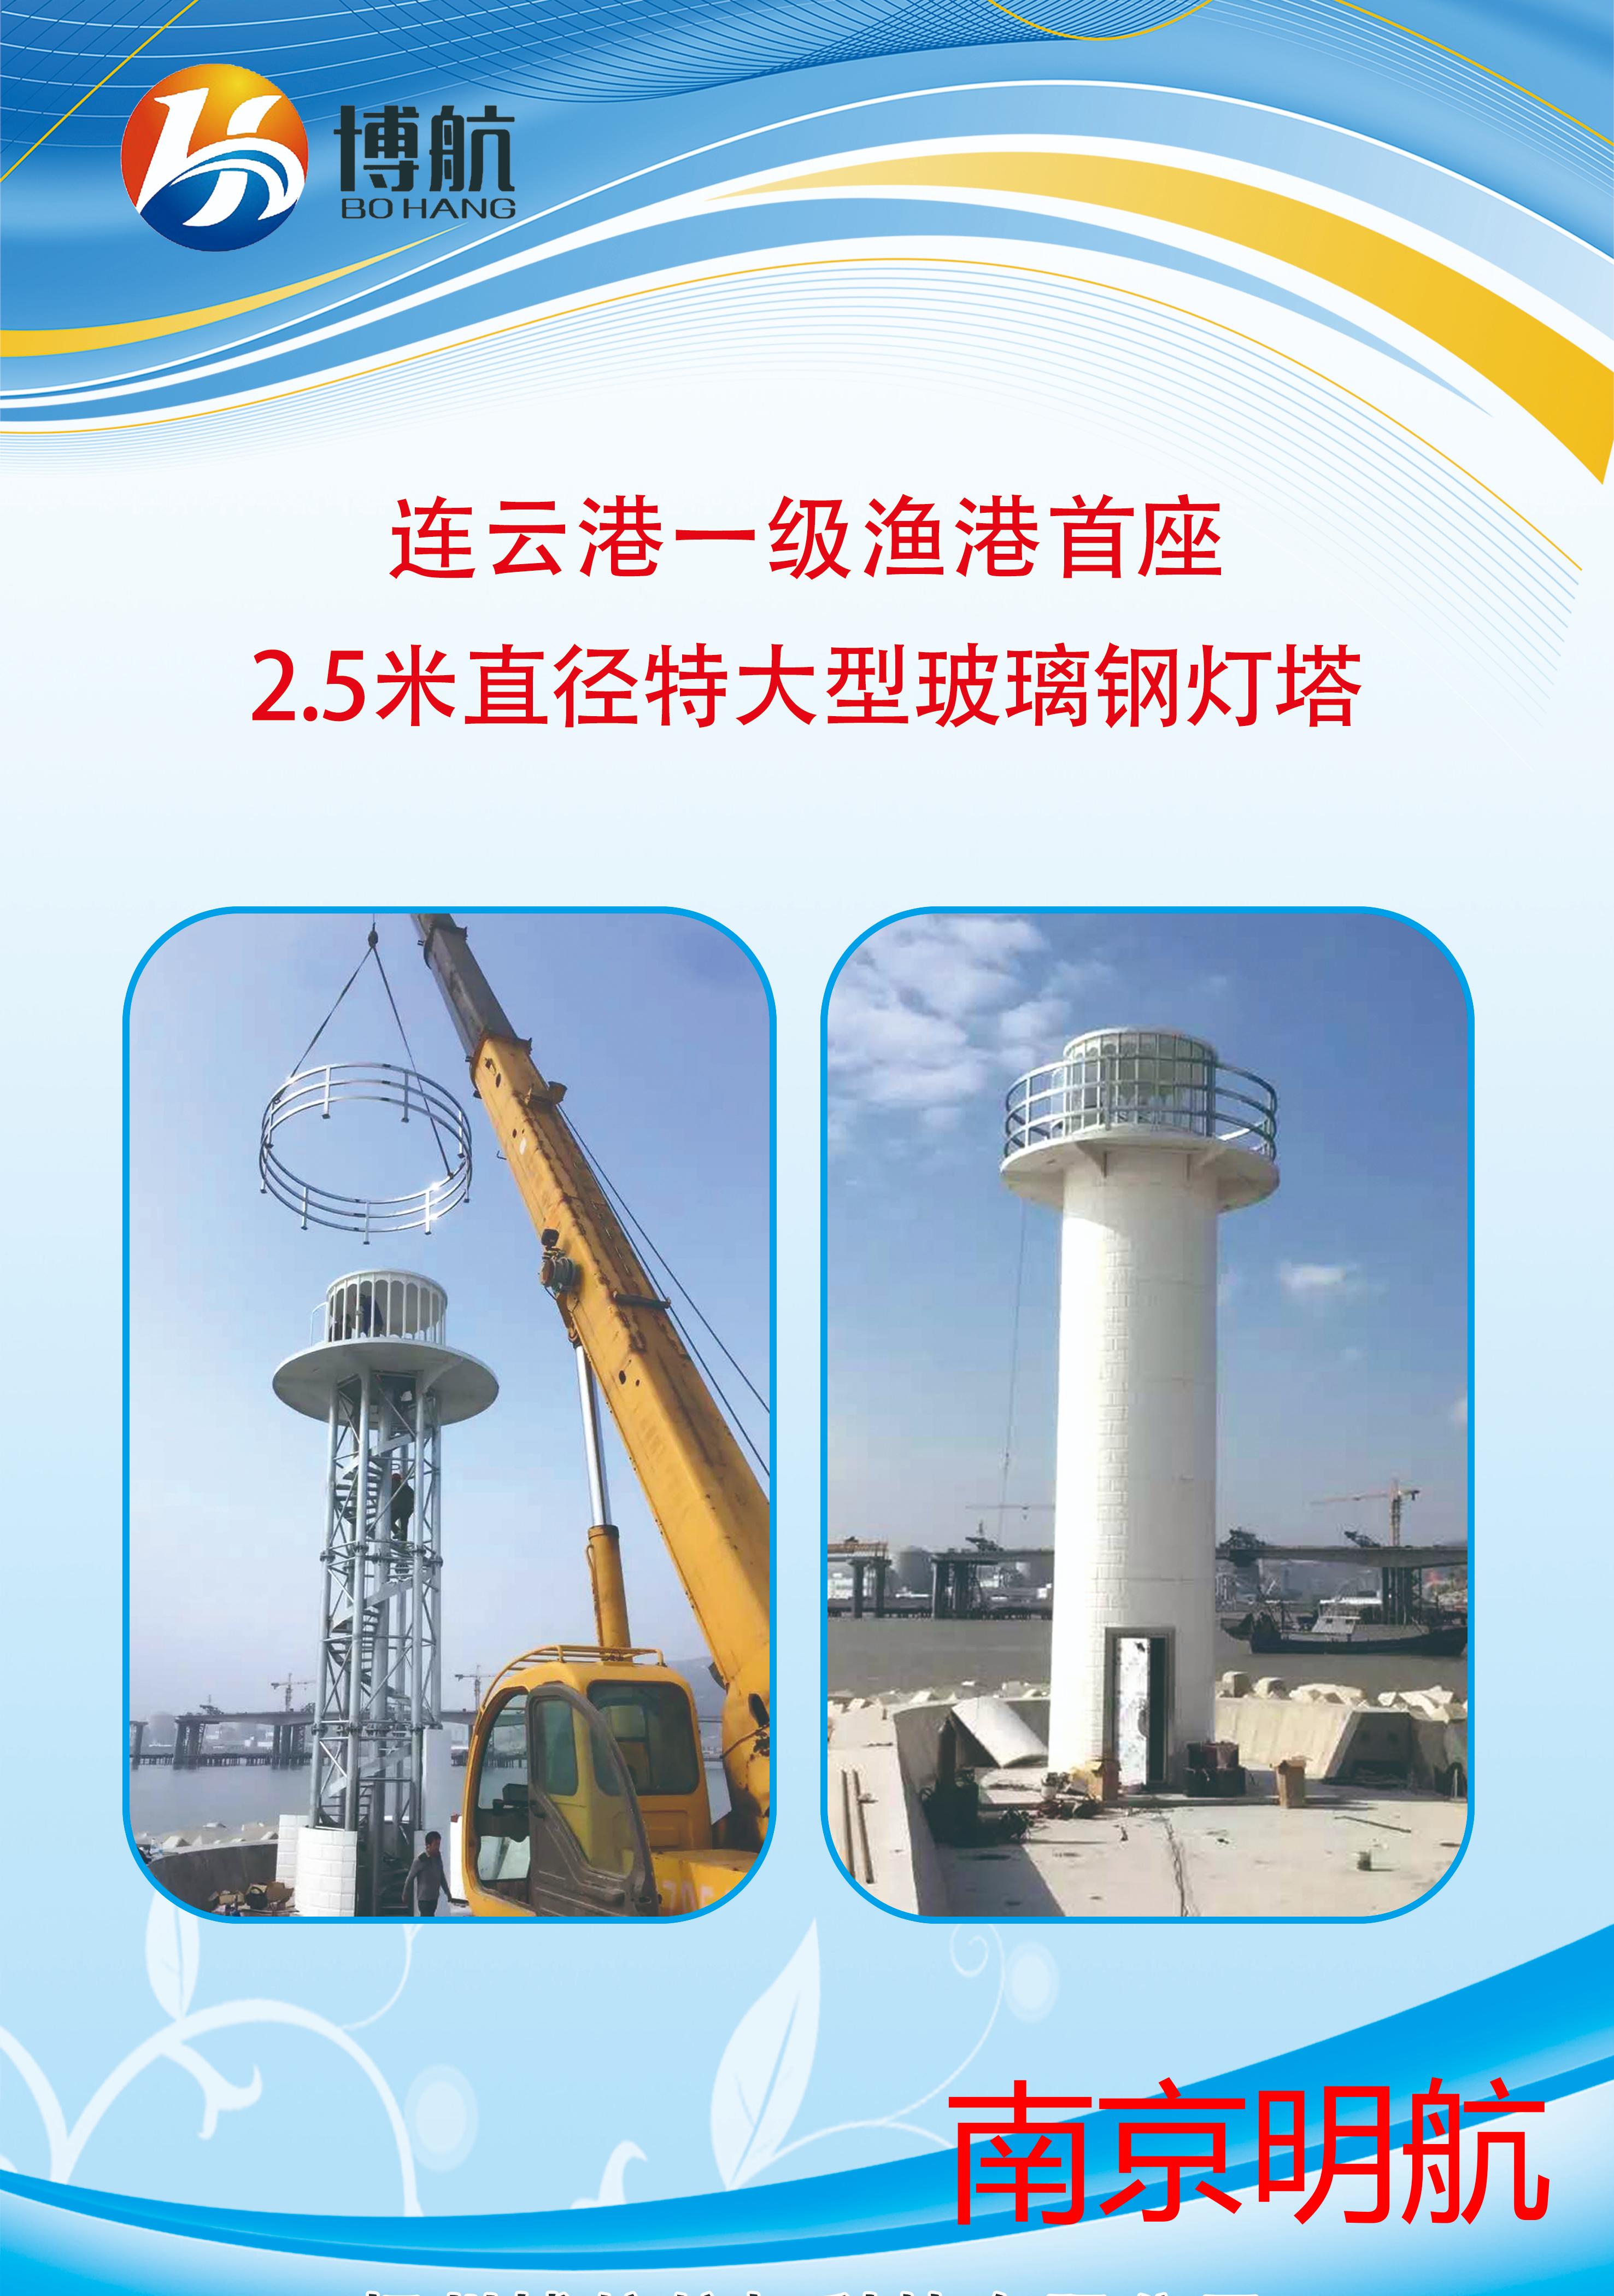 明航直销 连云港一级渔港首座2.5米直径特大型玻璃钢灯塔  示位标 航道航标专业生产厂家